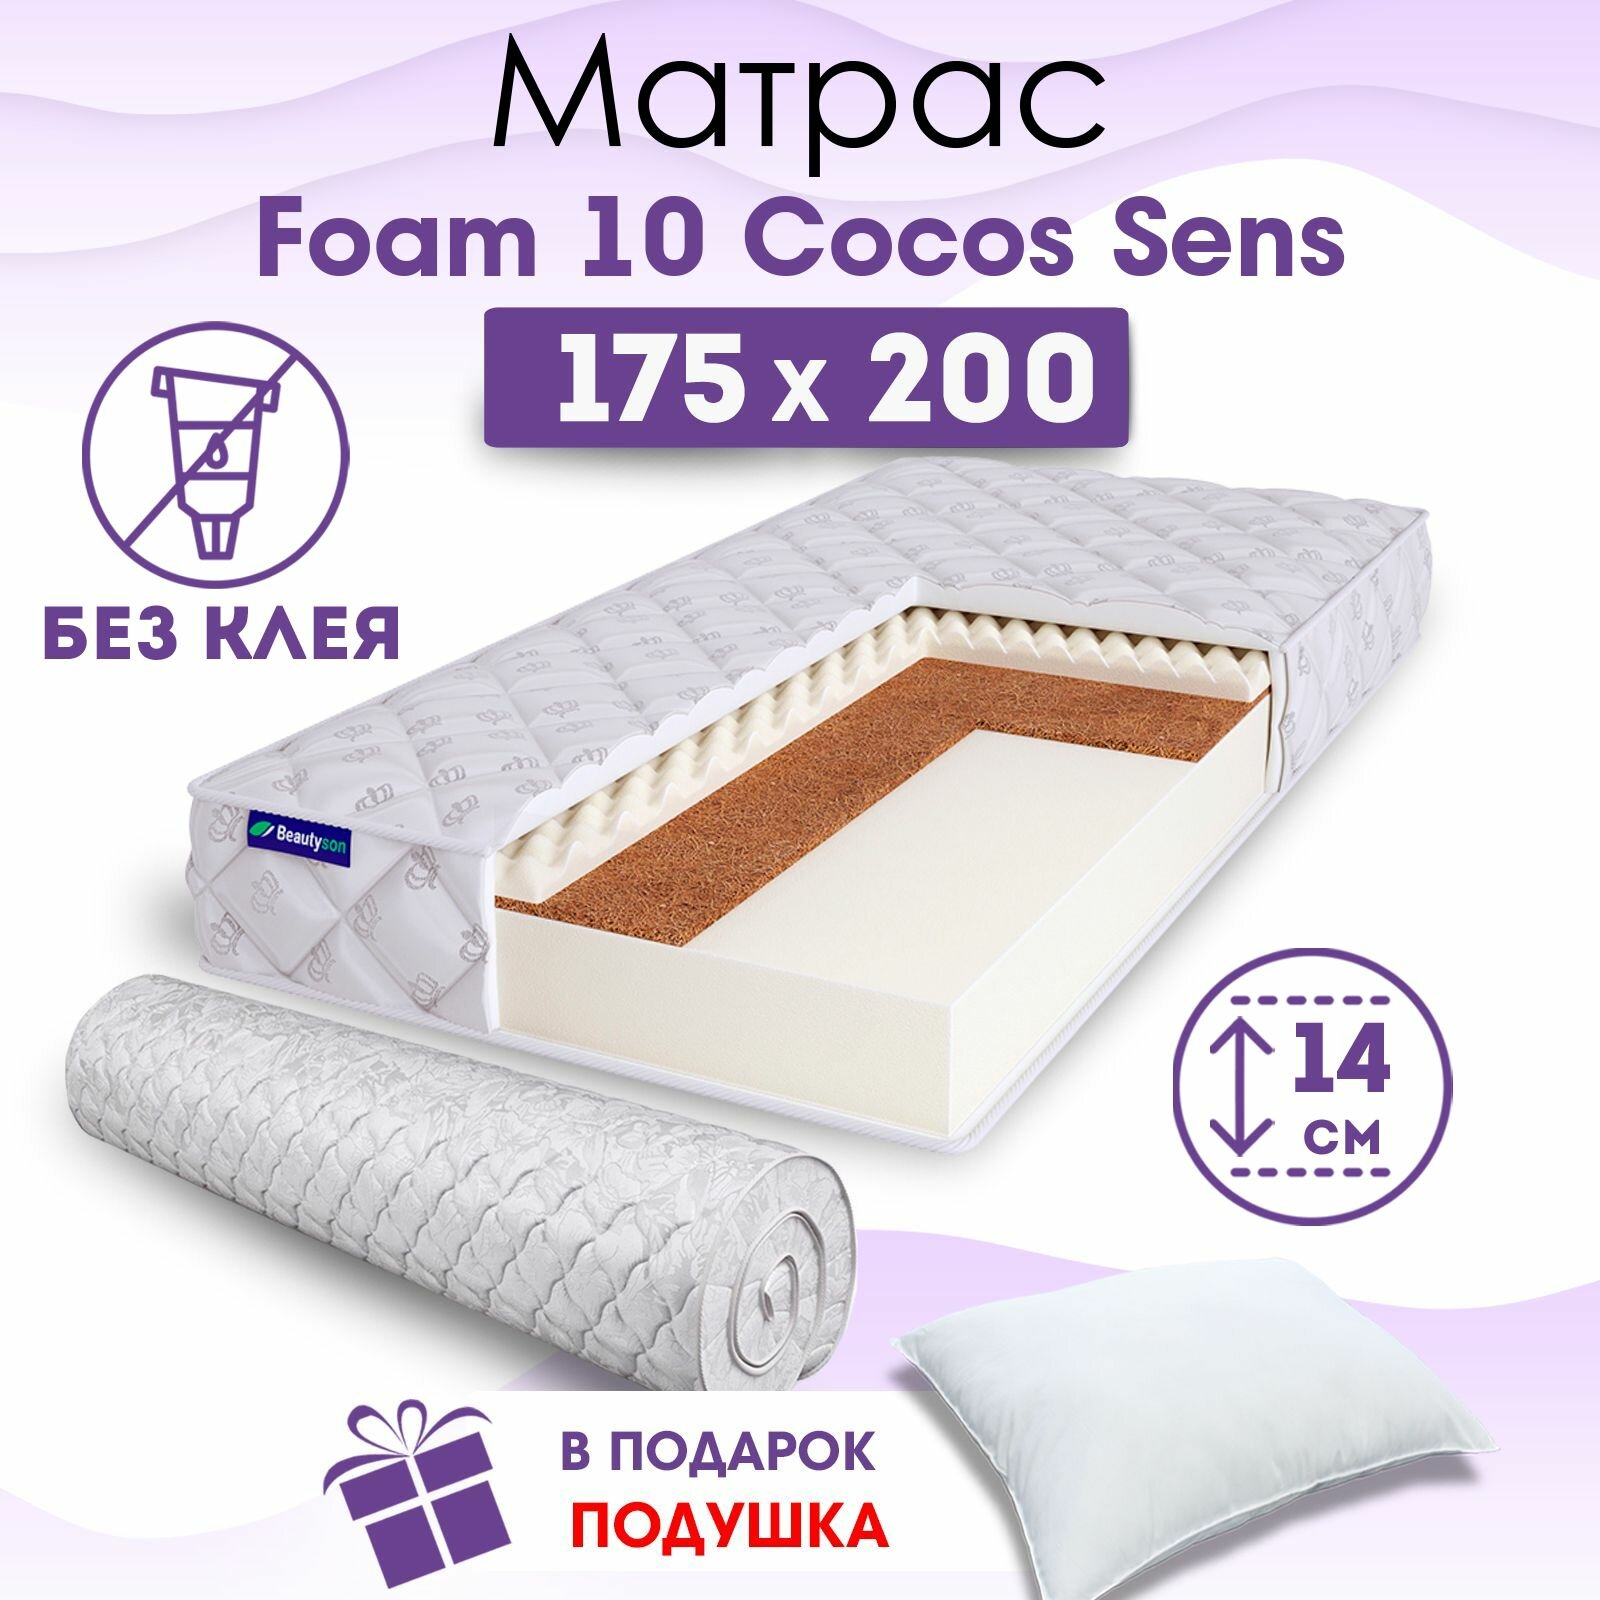 Ортопедический матрас Beautyson Foam 10 Cocos Sens без клея, 175х200, 14 см, беспружинный, двухспальный, на кровать, для дивана, умеренно мягкий